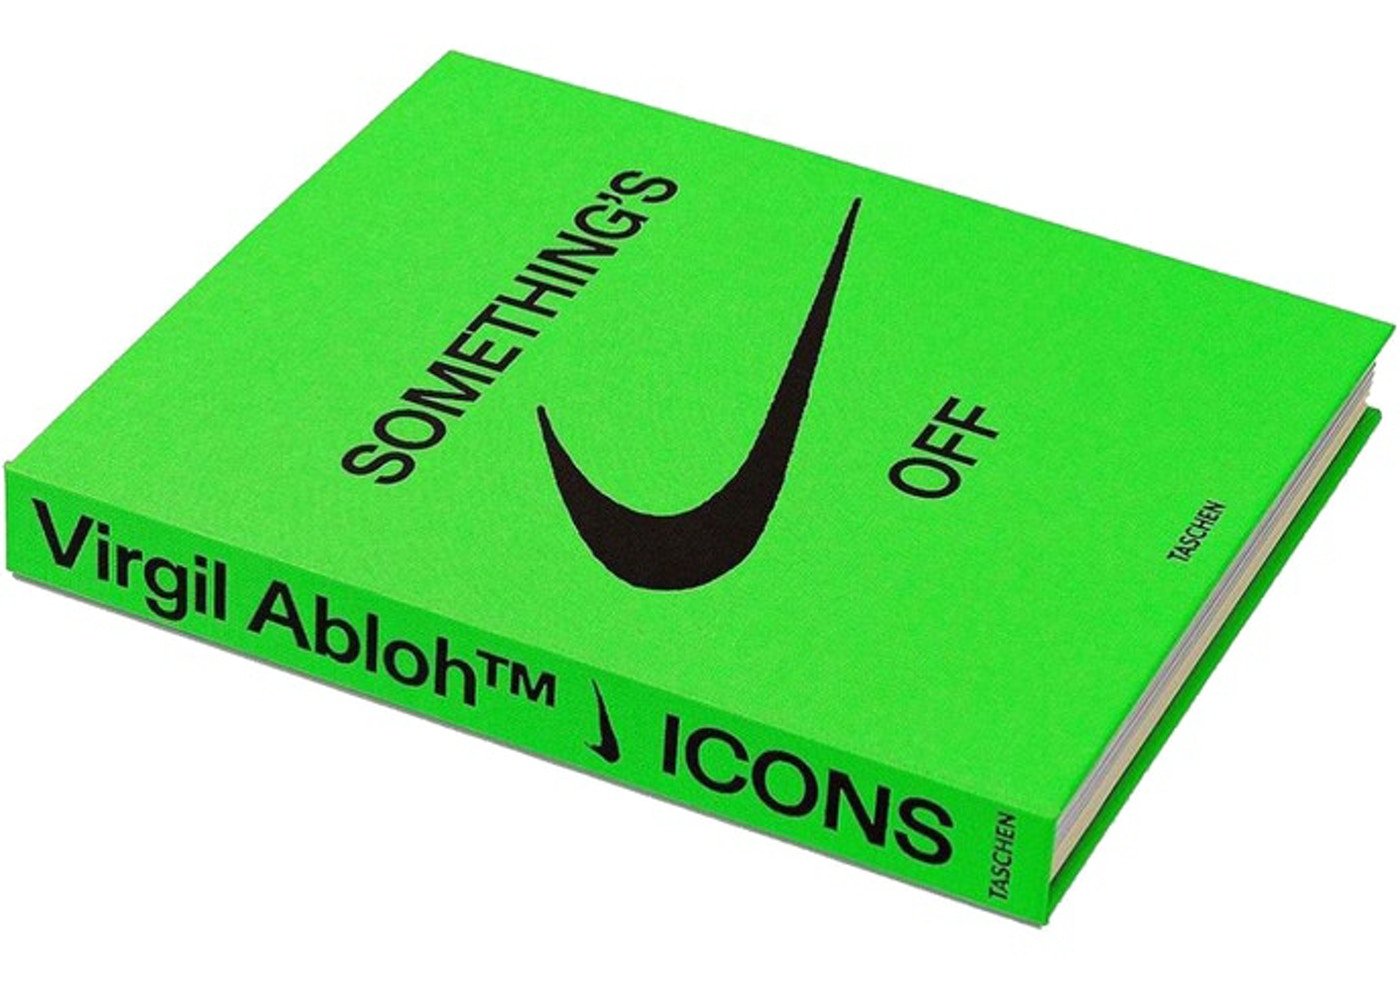 Nike x Virgil Abloh ICONS "THE TEN" Book - Sneakersbe Sneakers Sale Online